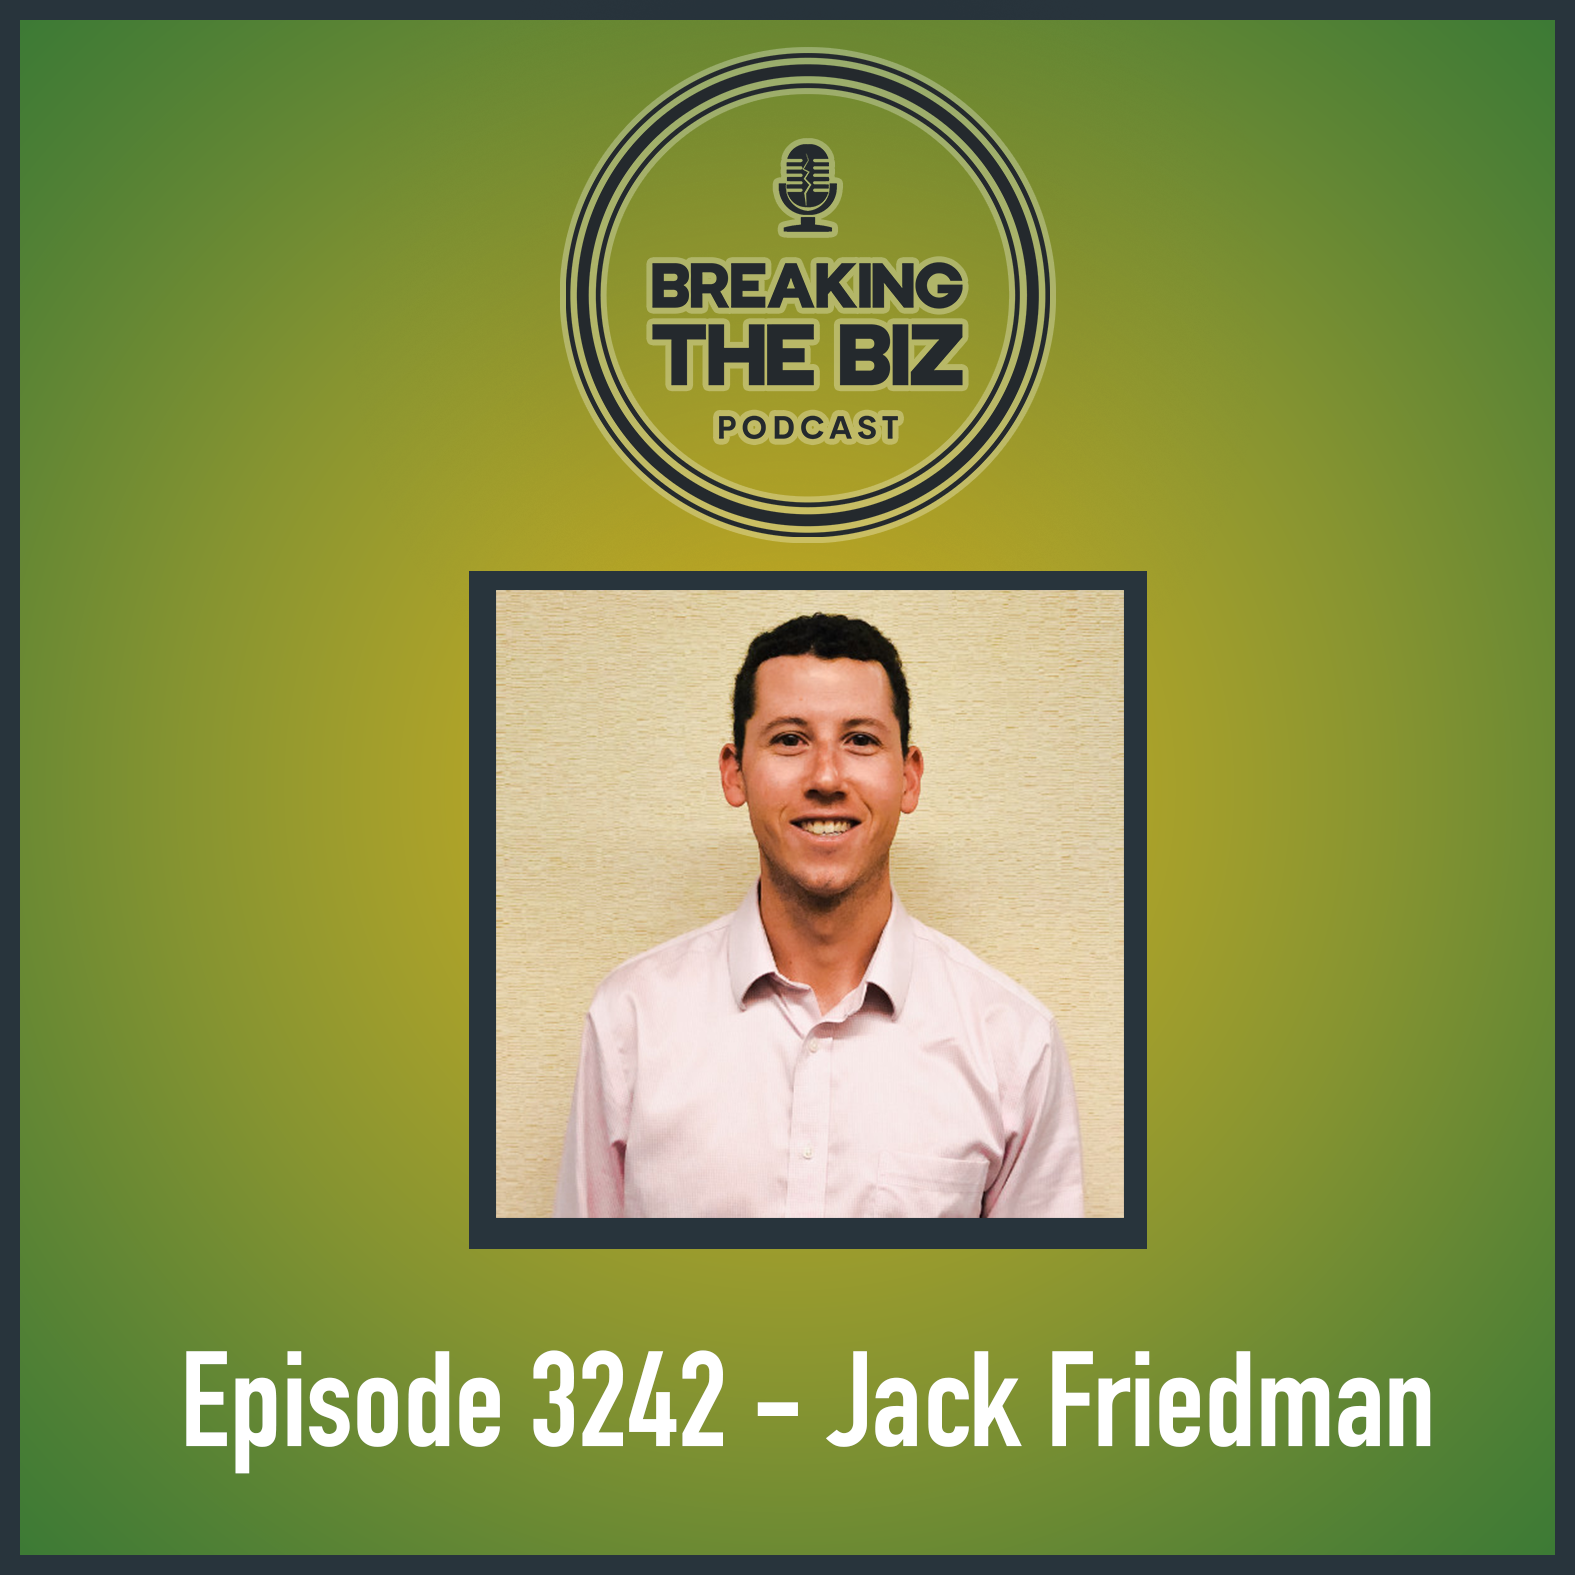 Episode 3242 - Jack Friedman